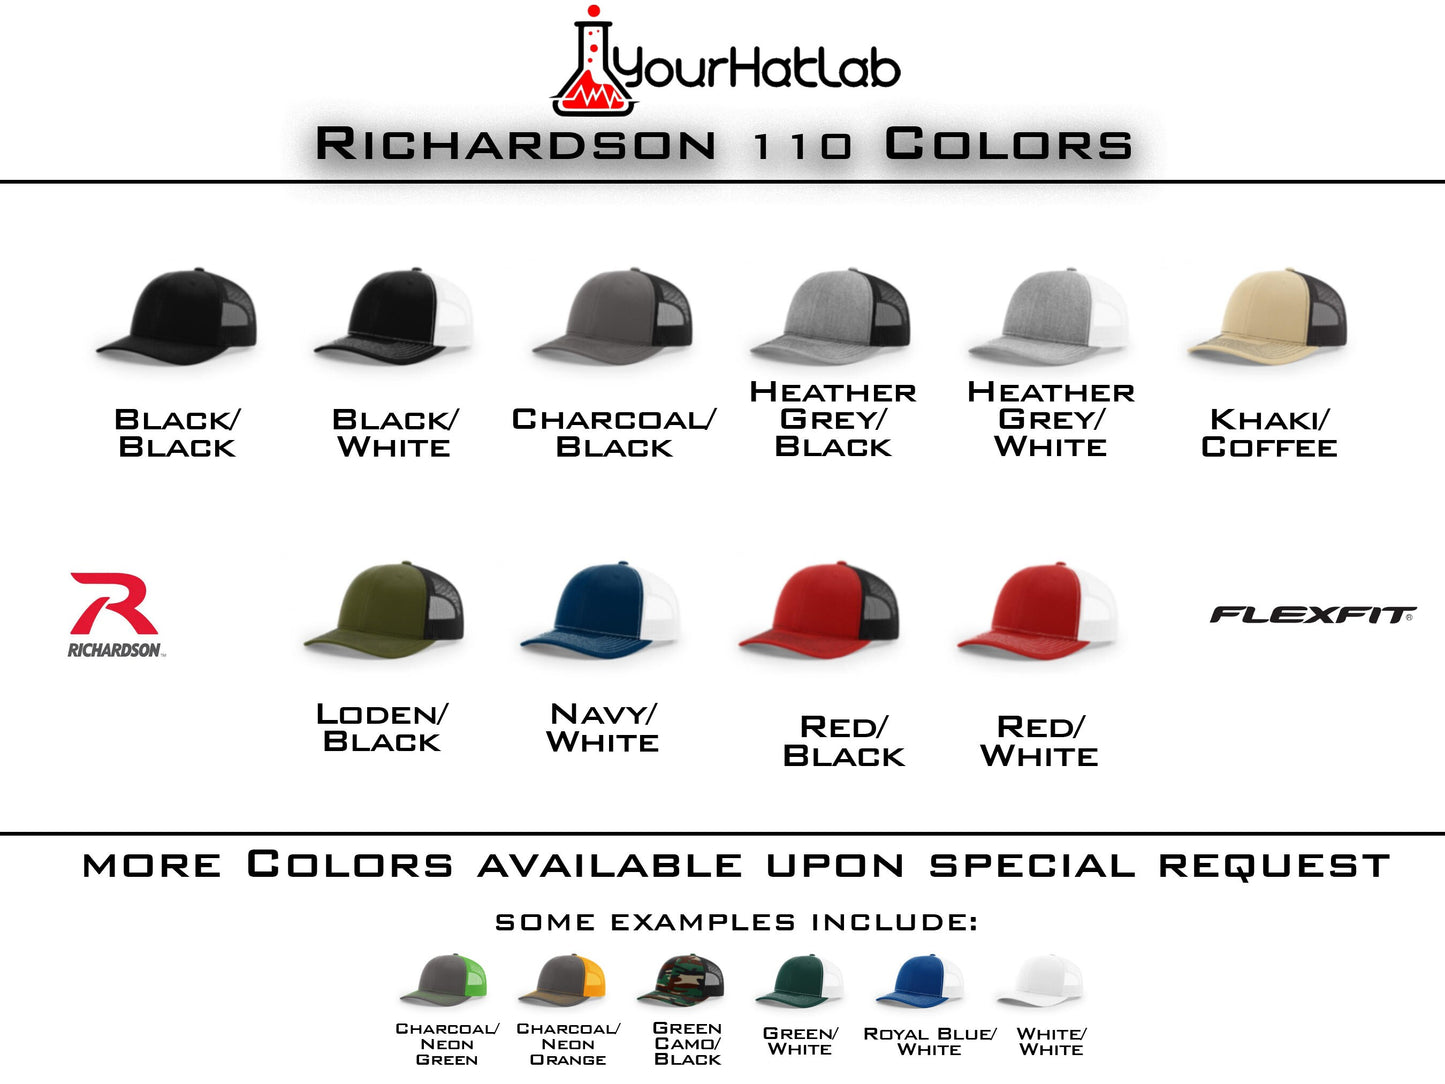 2A Guns & Ammo R-FLEX Richardson 110 Stretch Hat